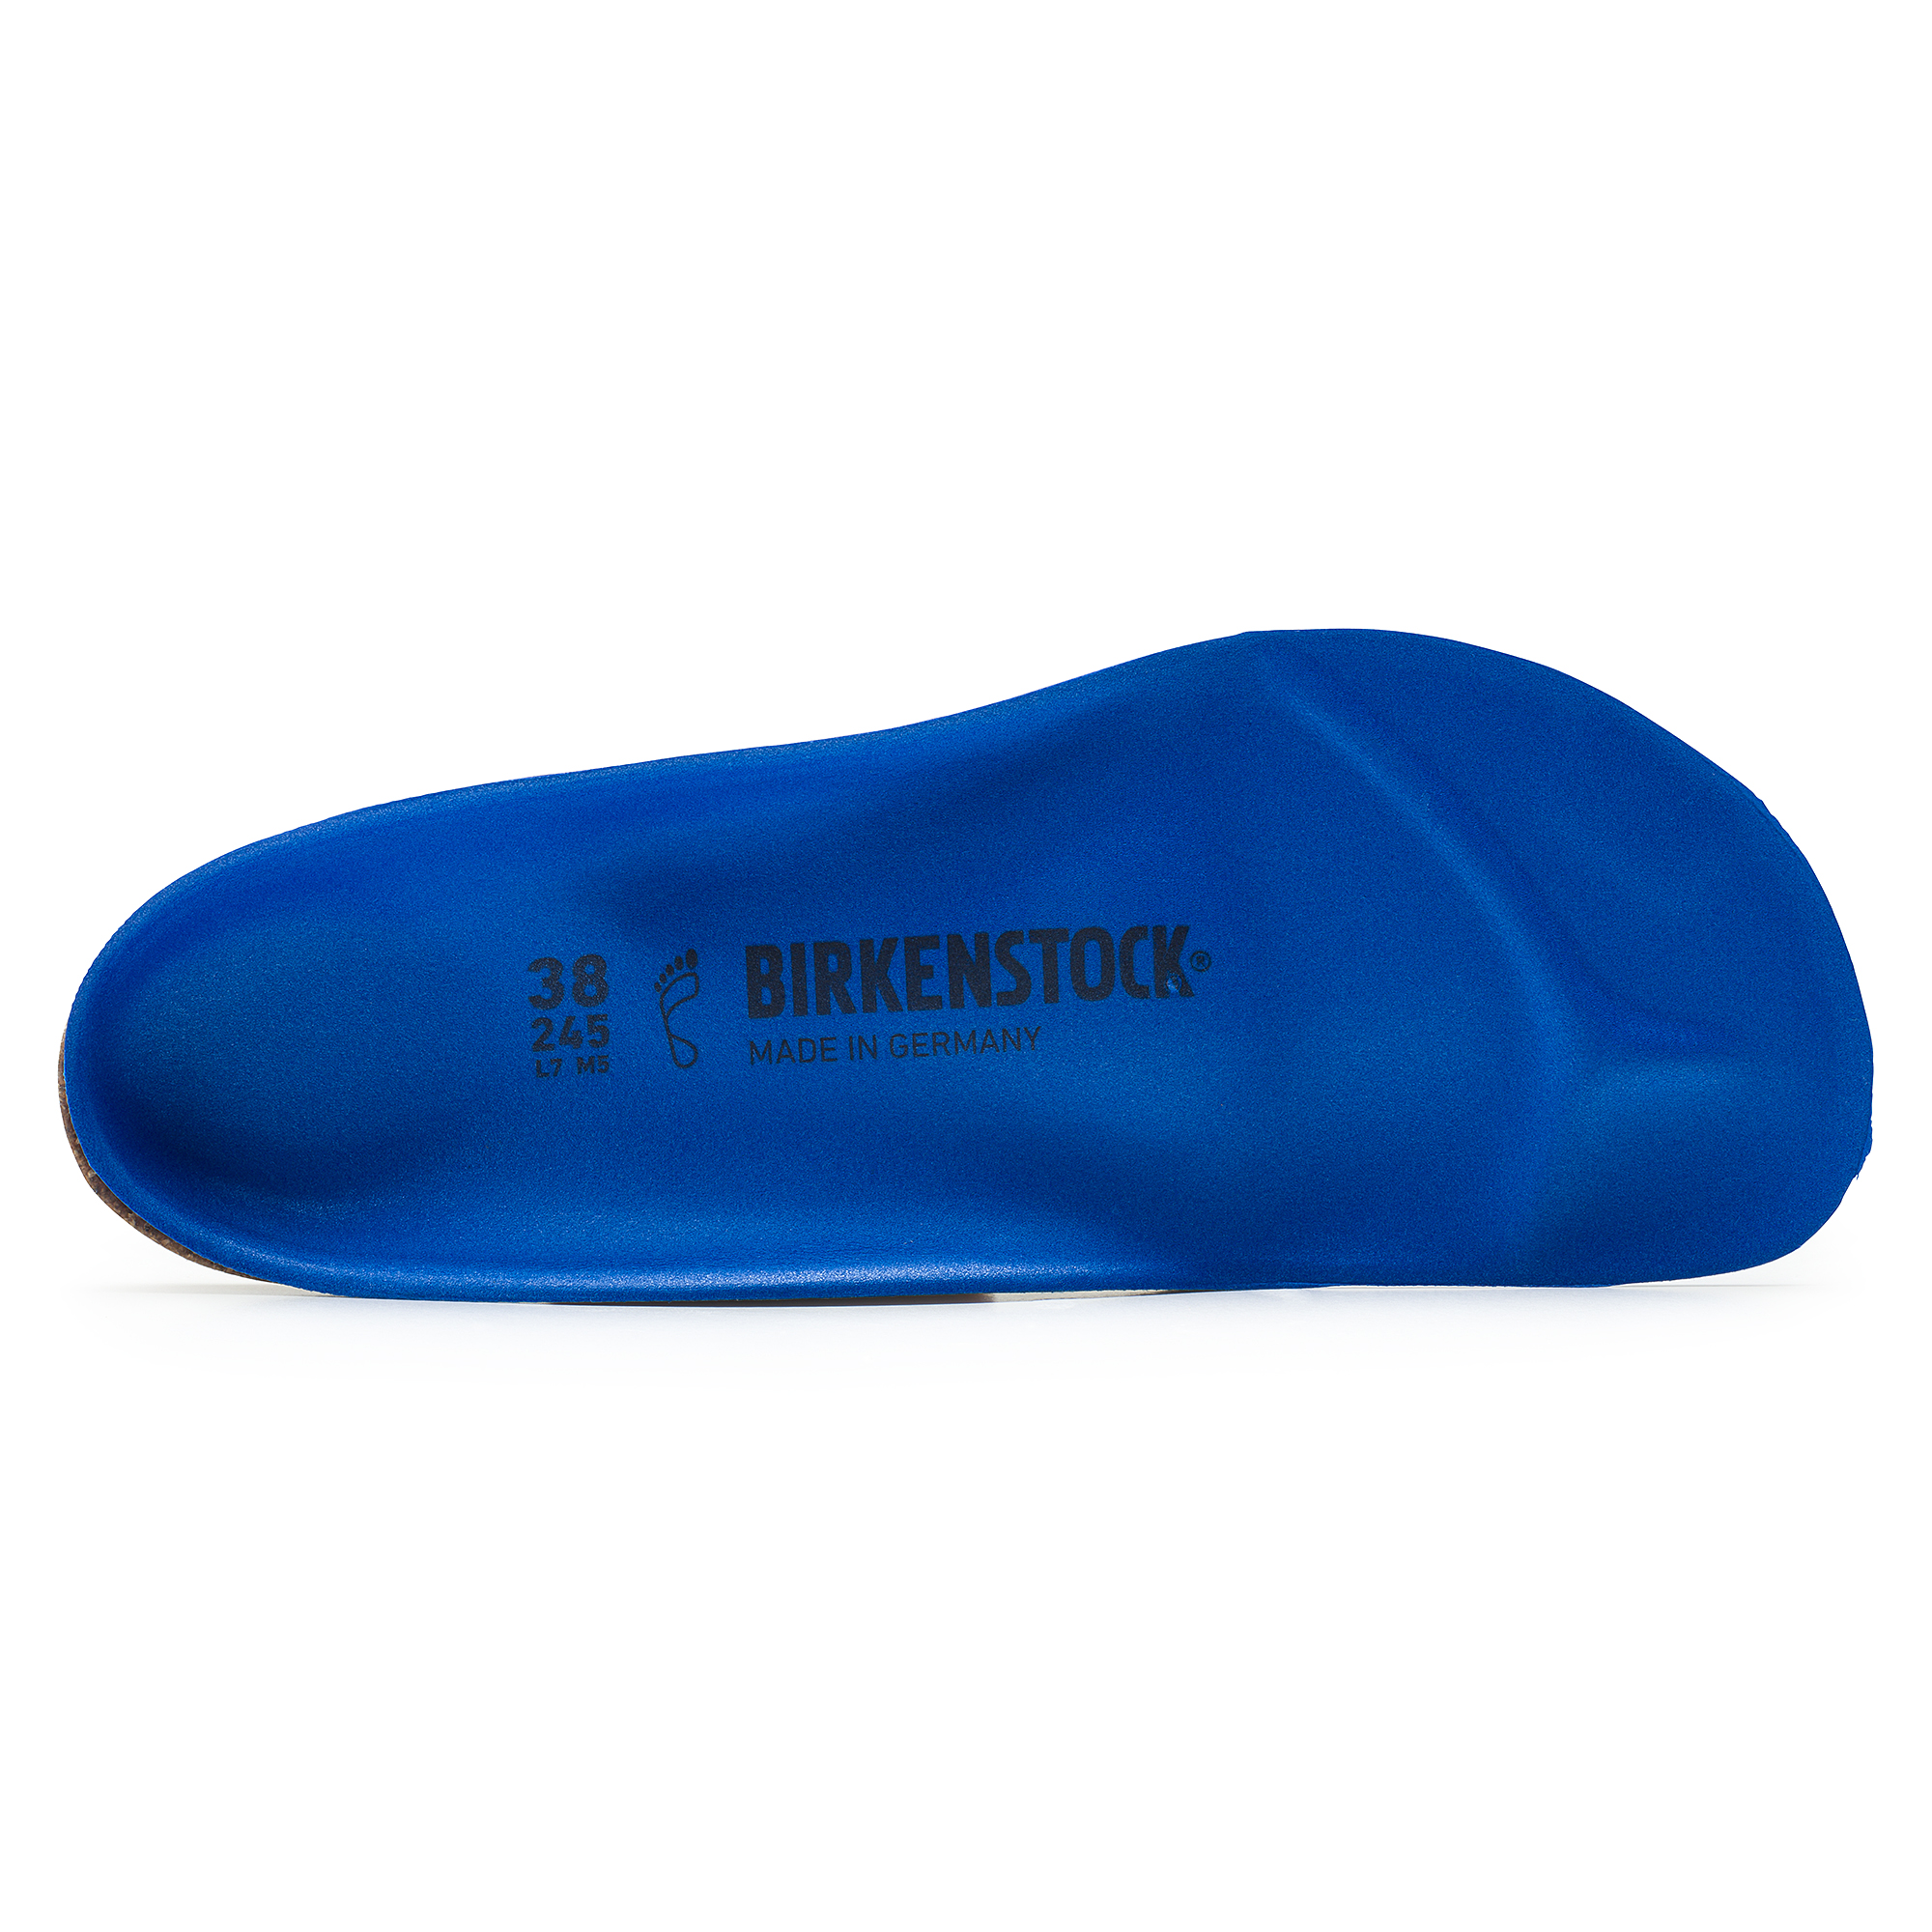 birkenstock birko active arch support insoles